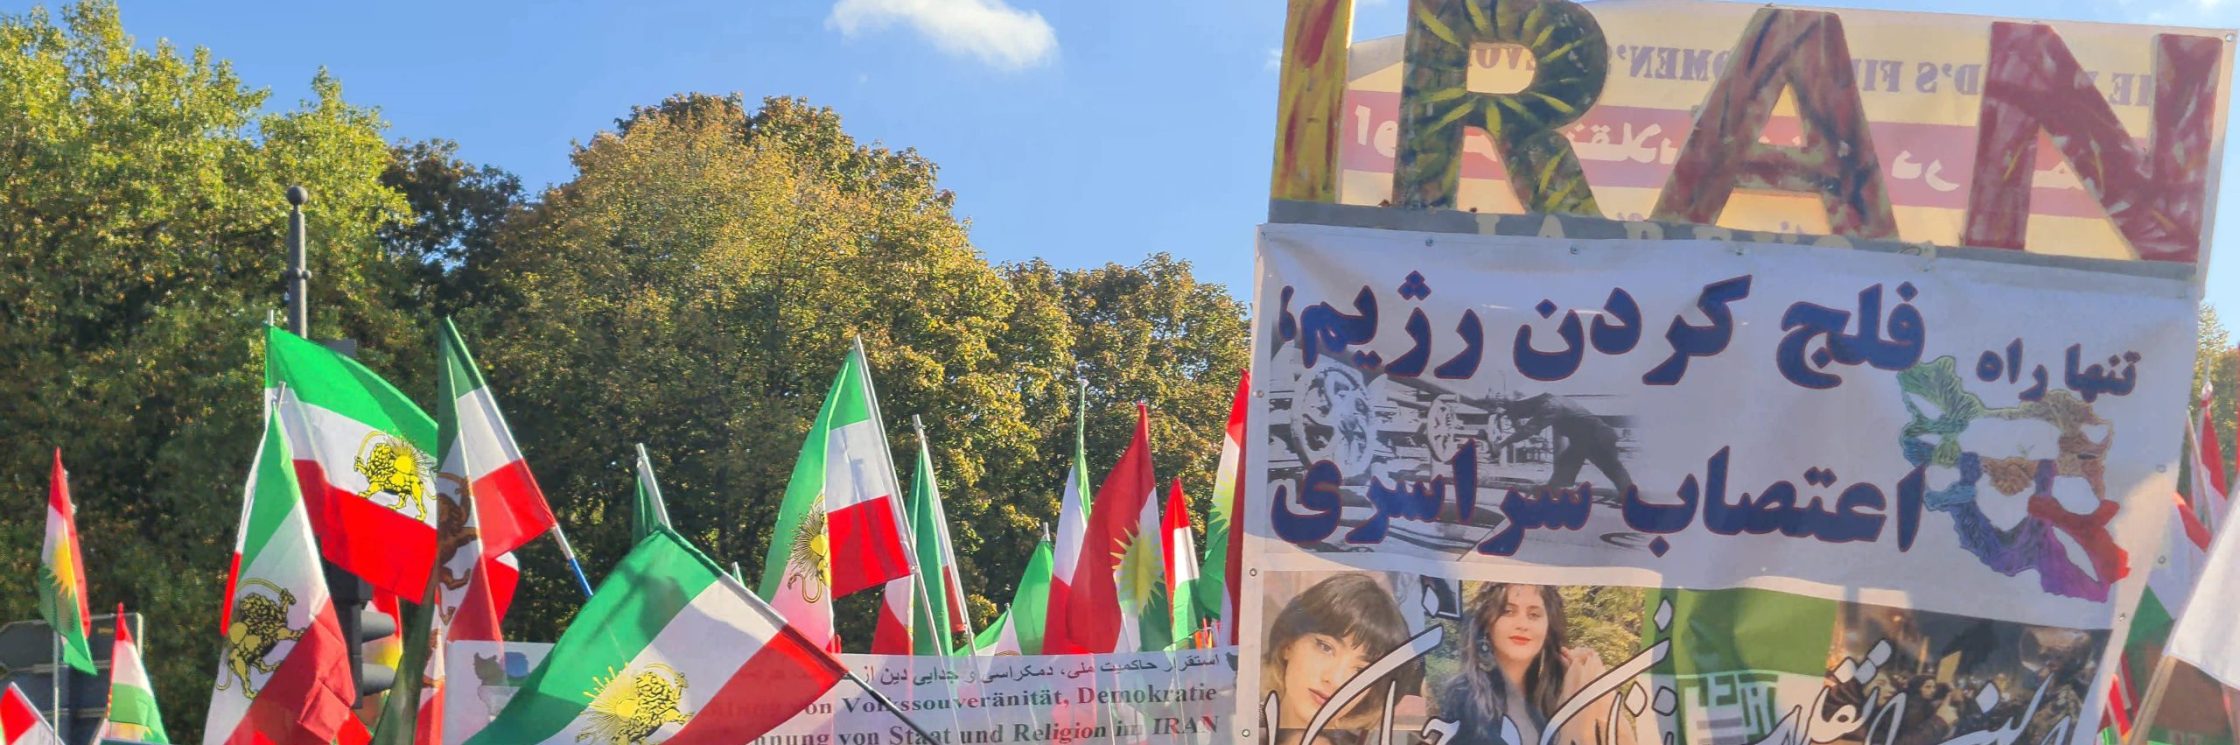 Menschen in einer Demonstration mit Iran-Fahnen und Schildern